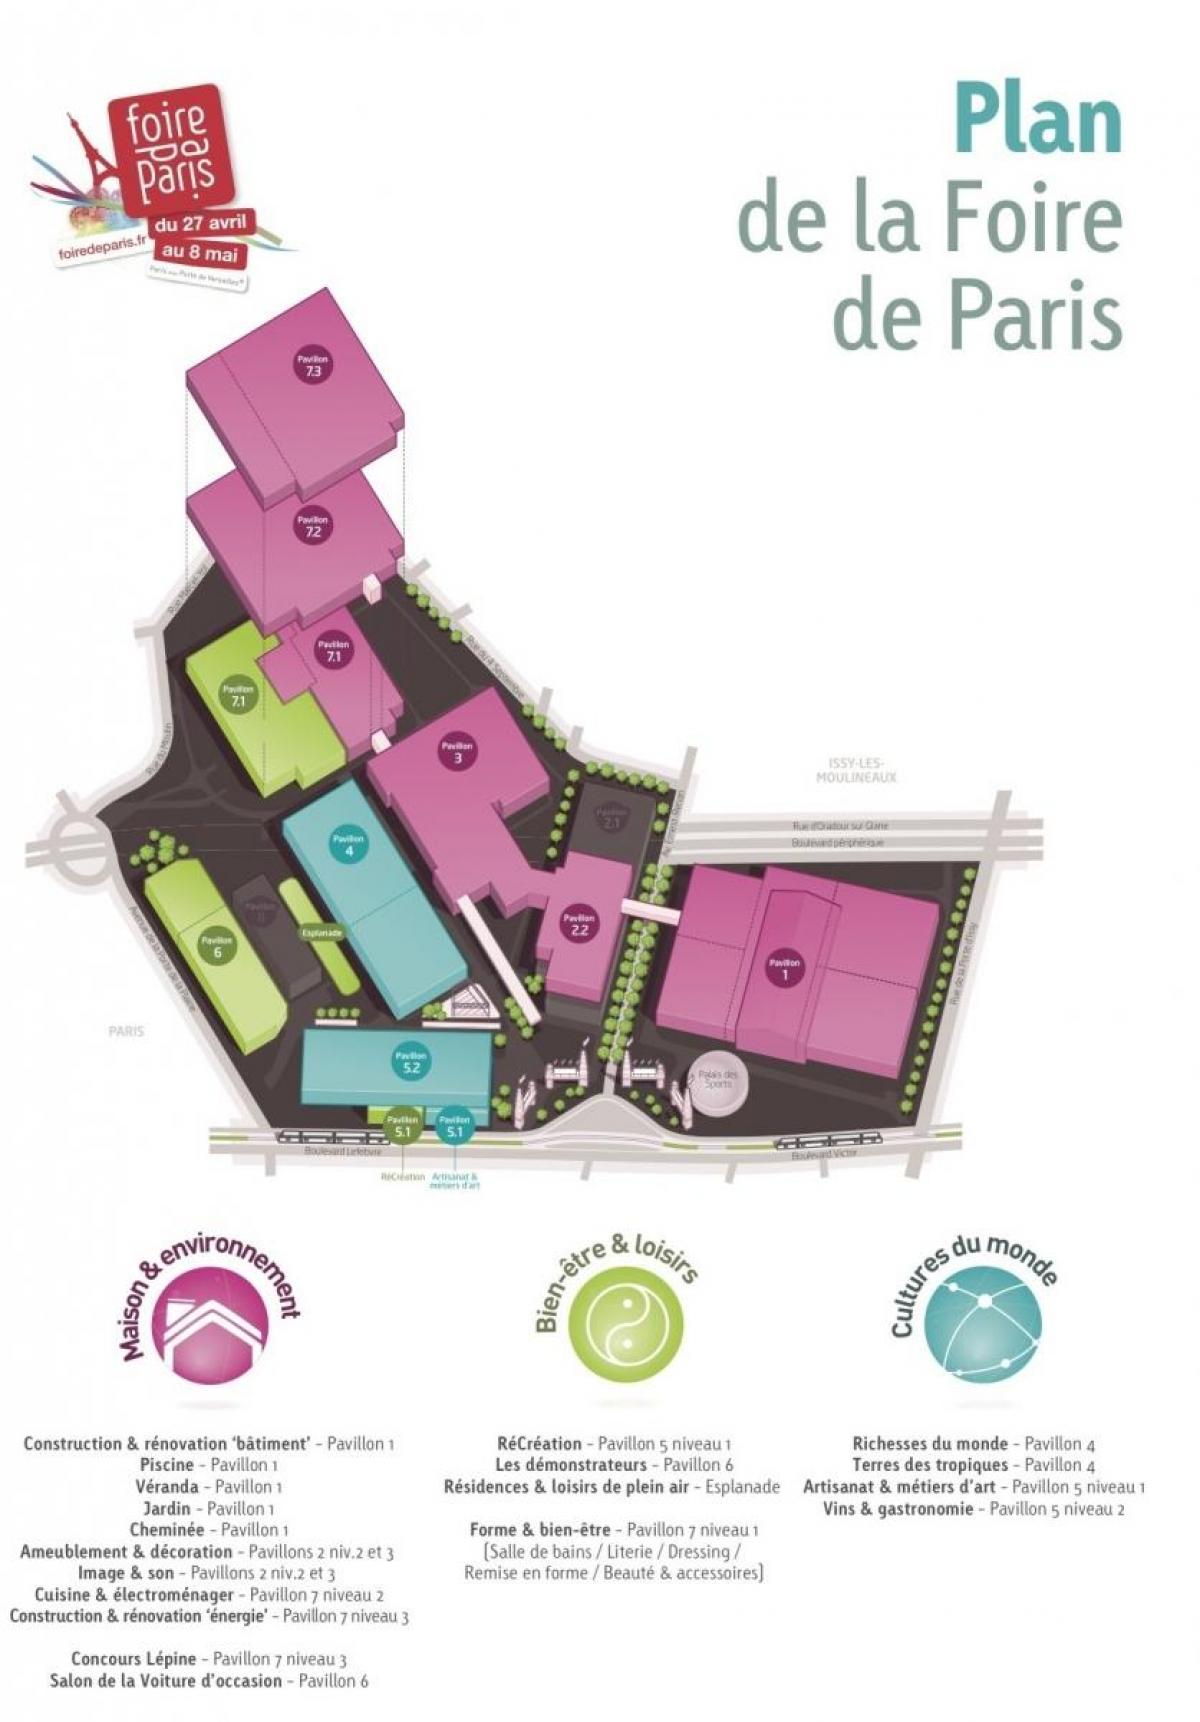 Zemljevid Foire de Paris